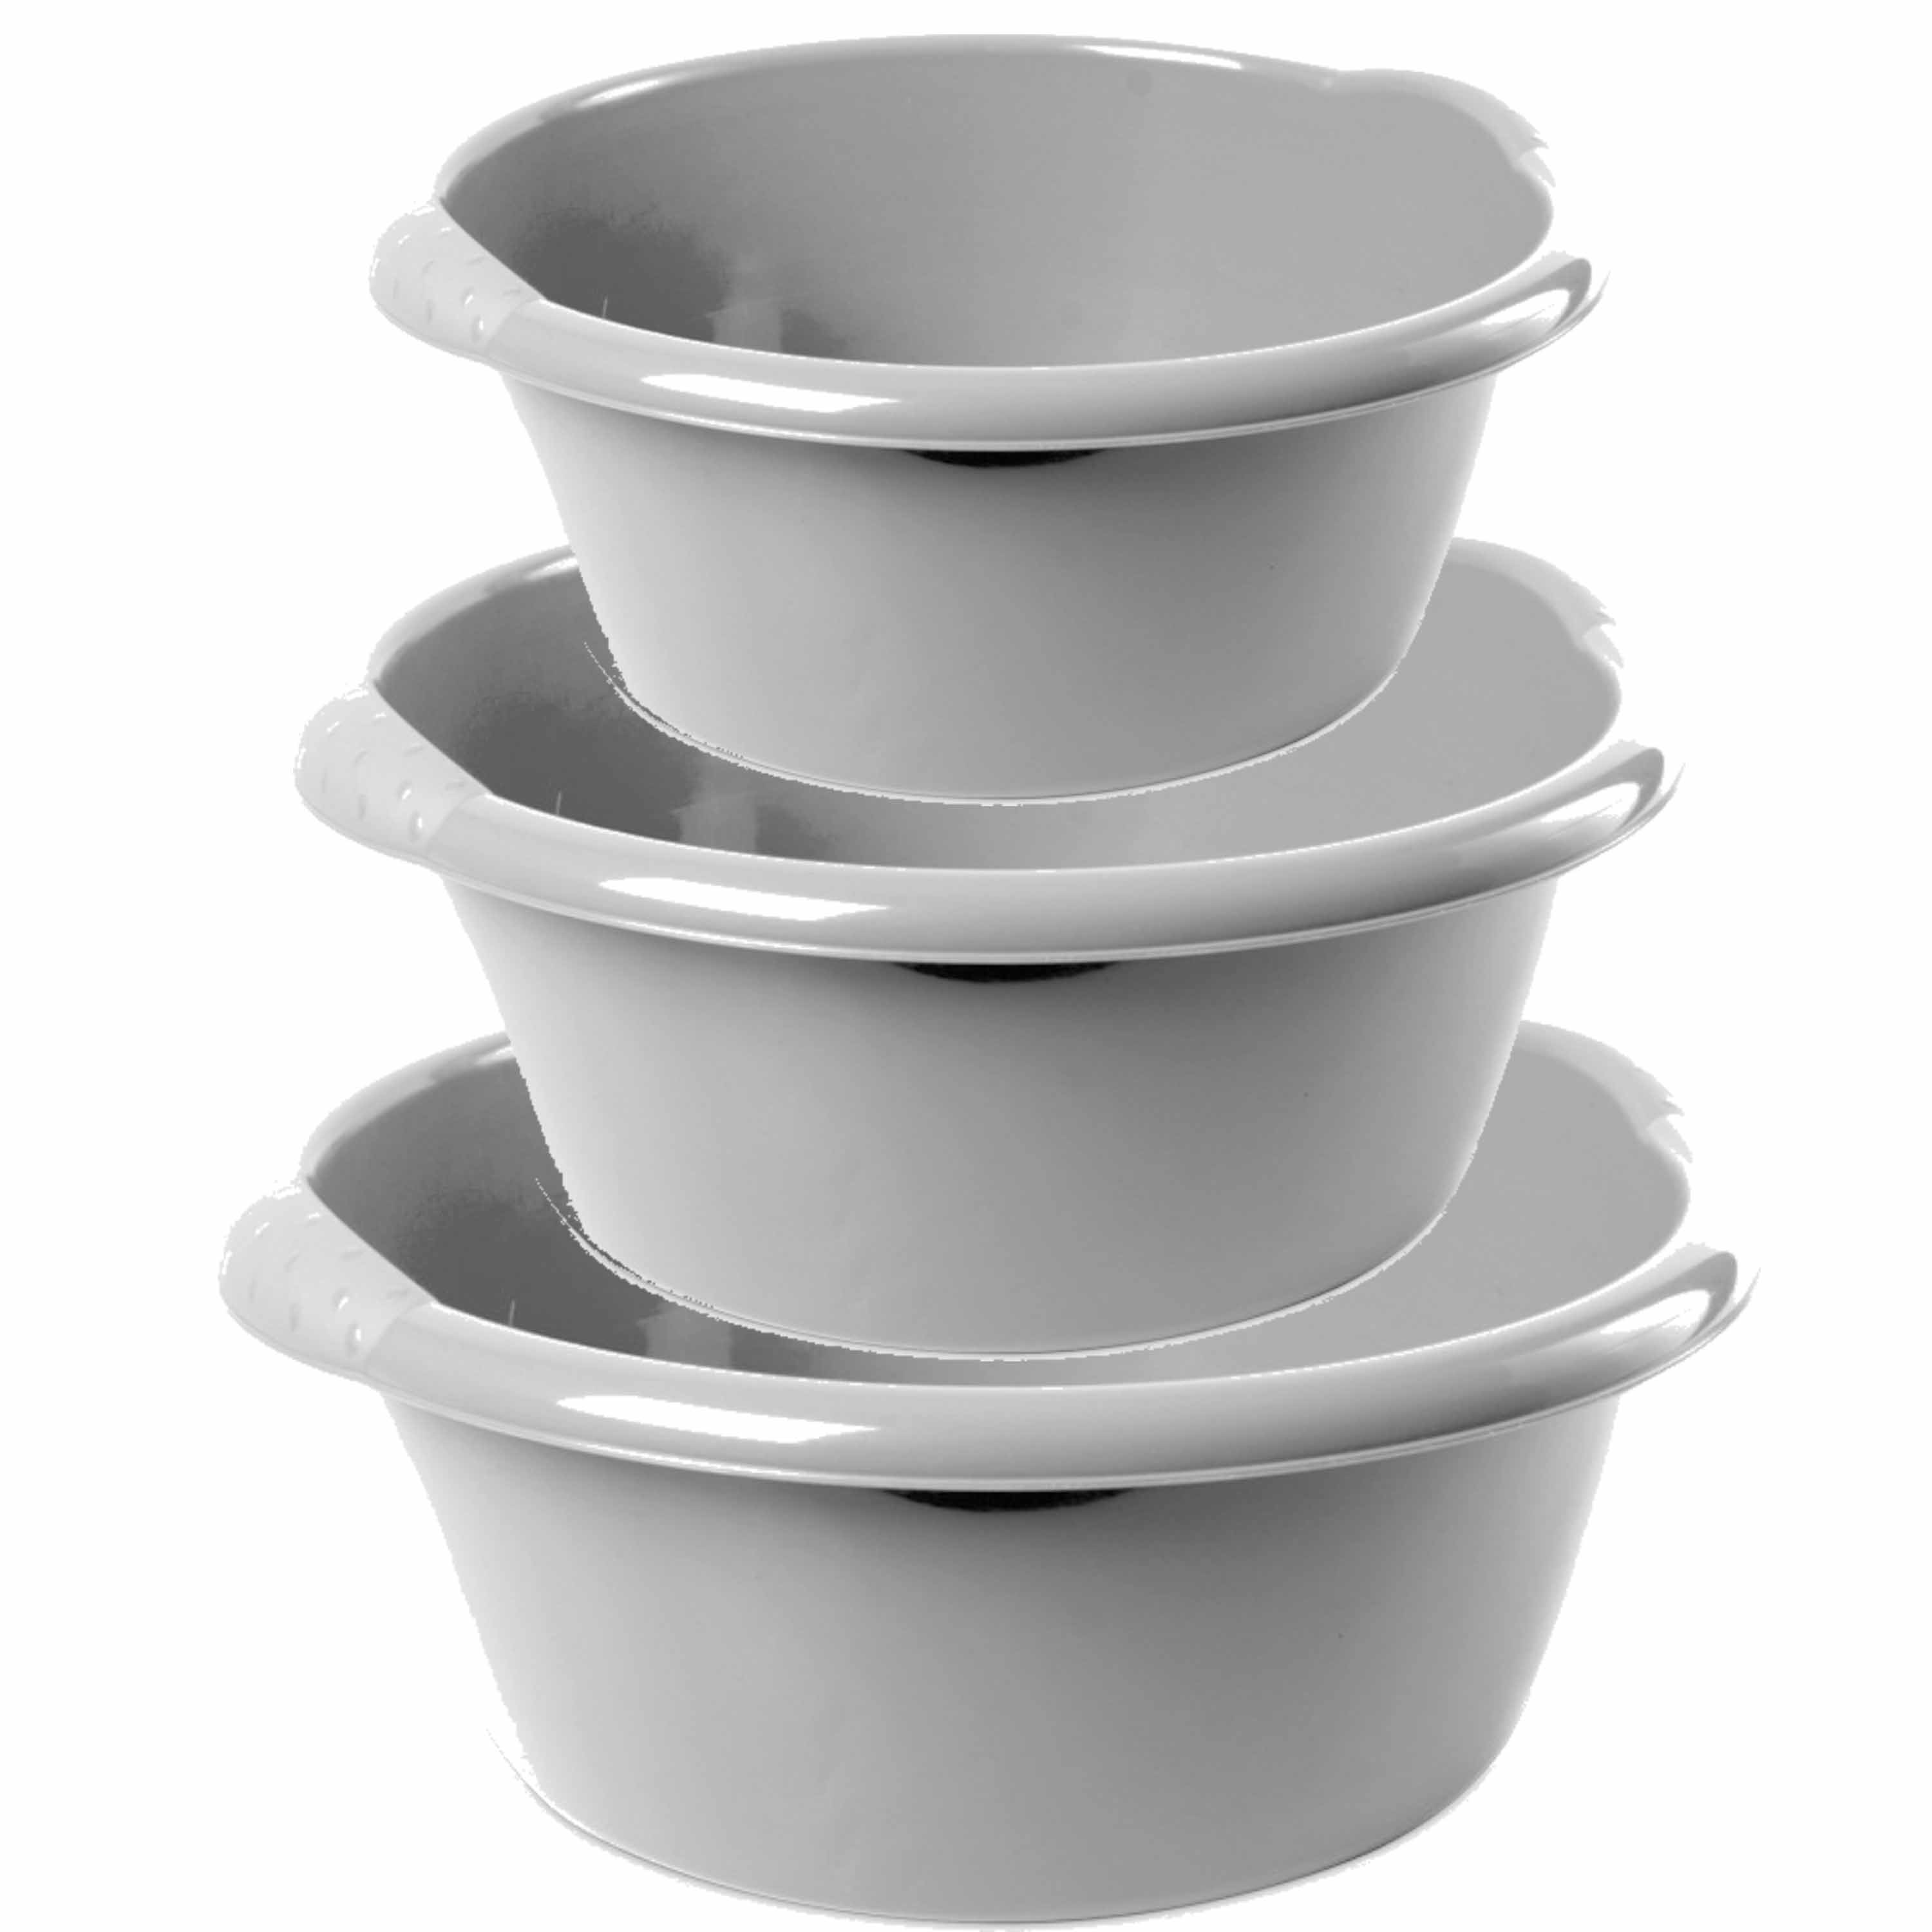 Combi set van 3x stuks ronde afwasteiltjes-afwasbakken in het zilver 3-6-15 liter